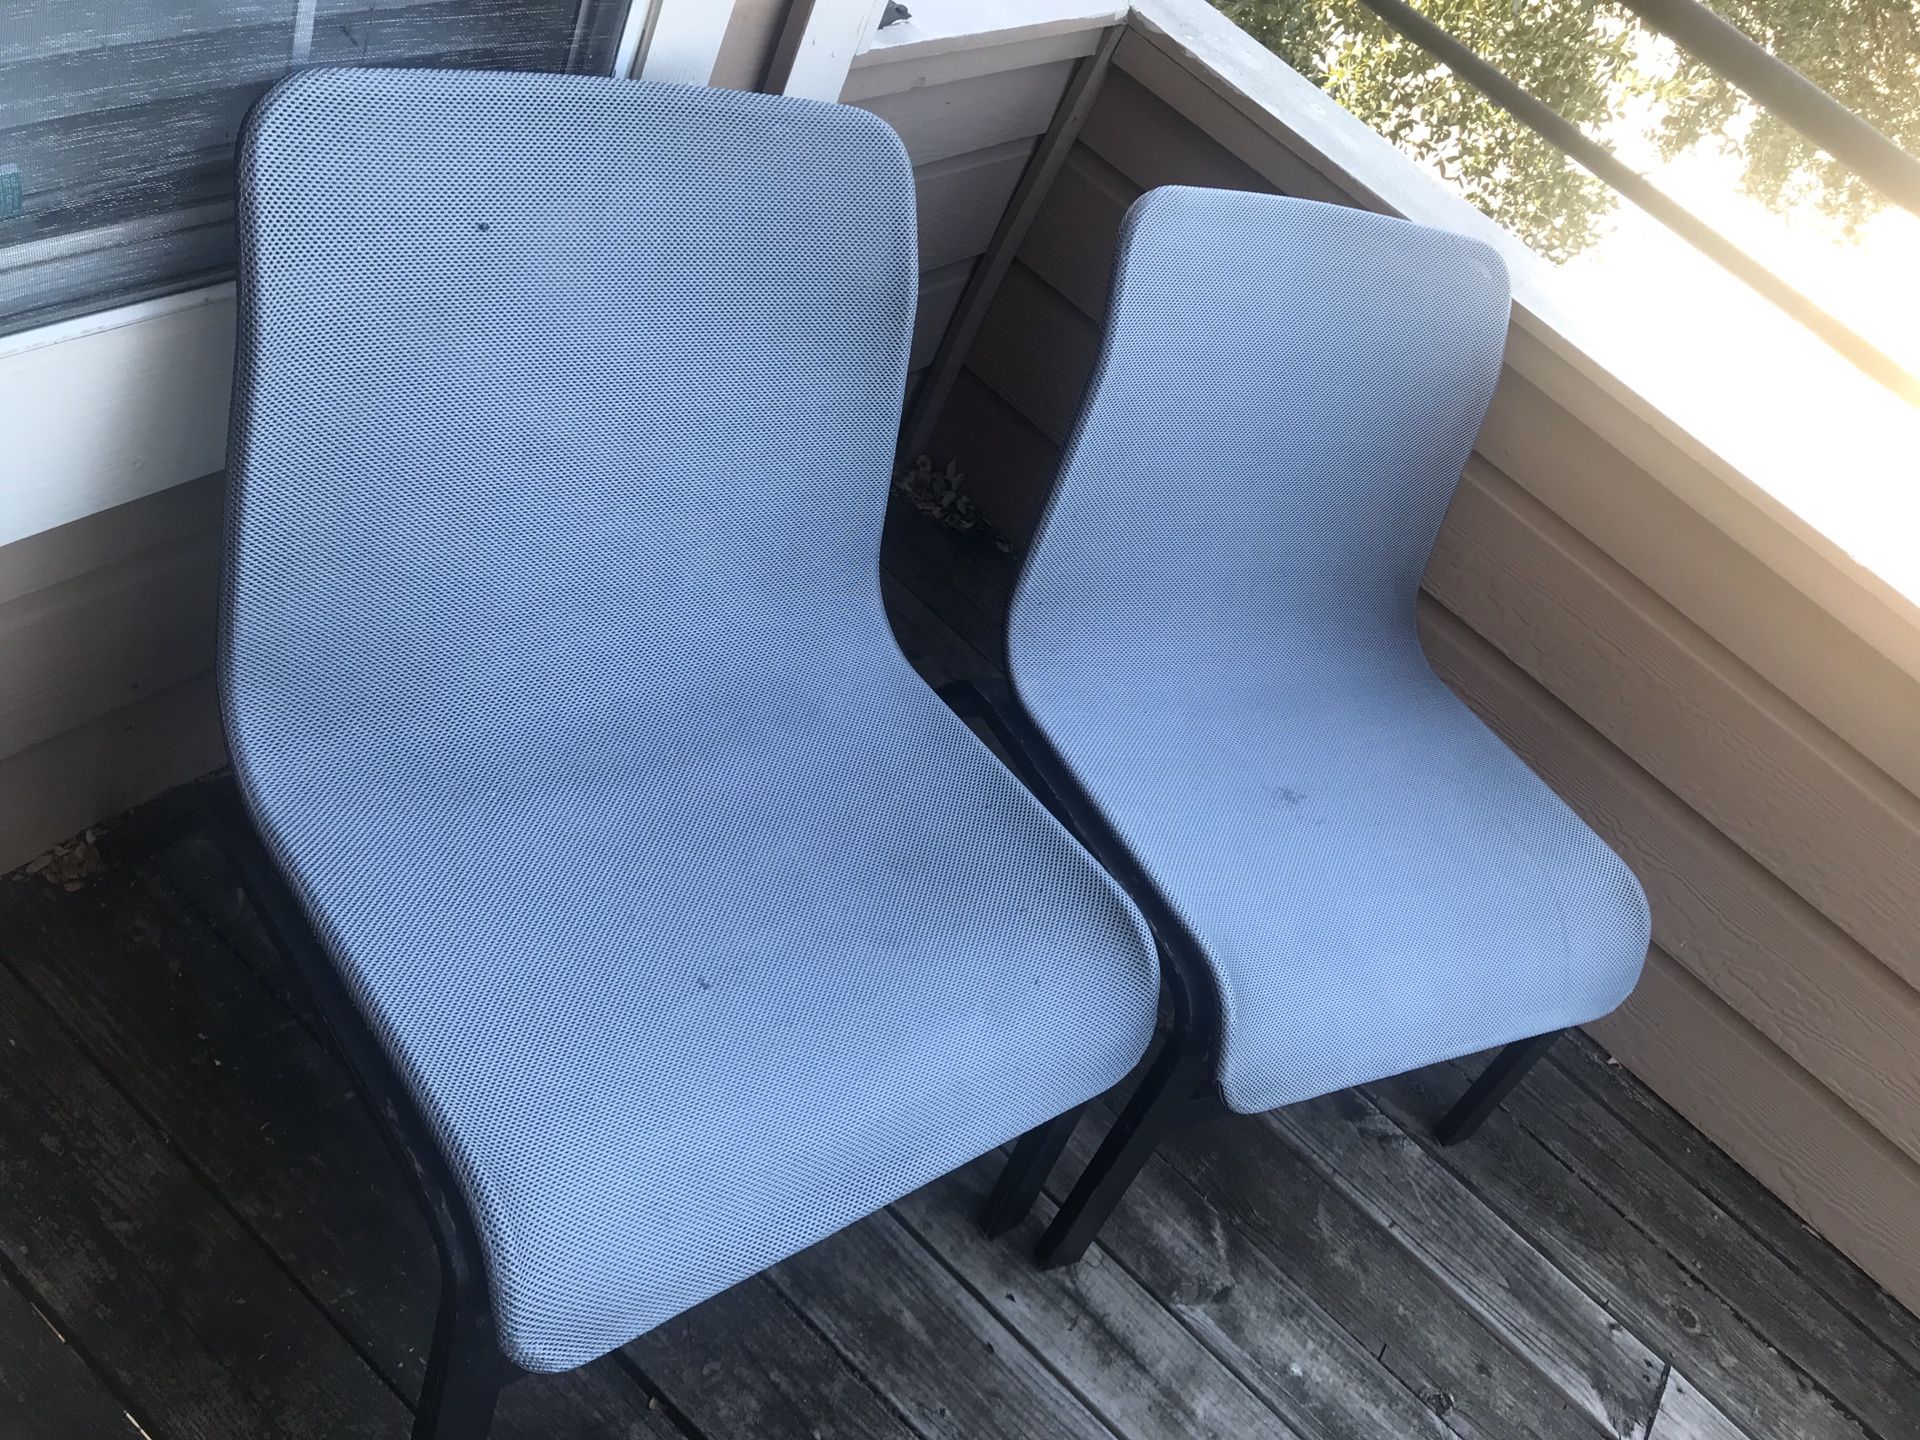 2 Ikea Patio Chairs